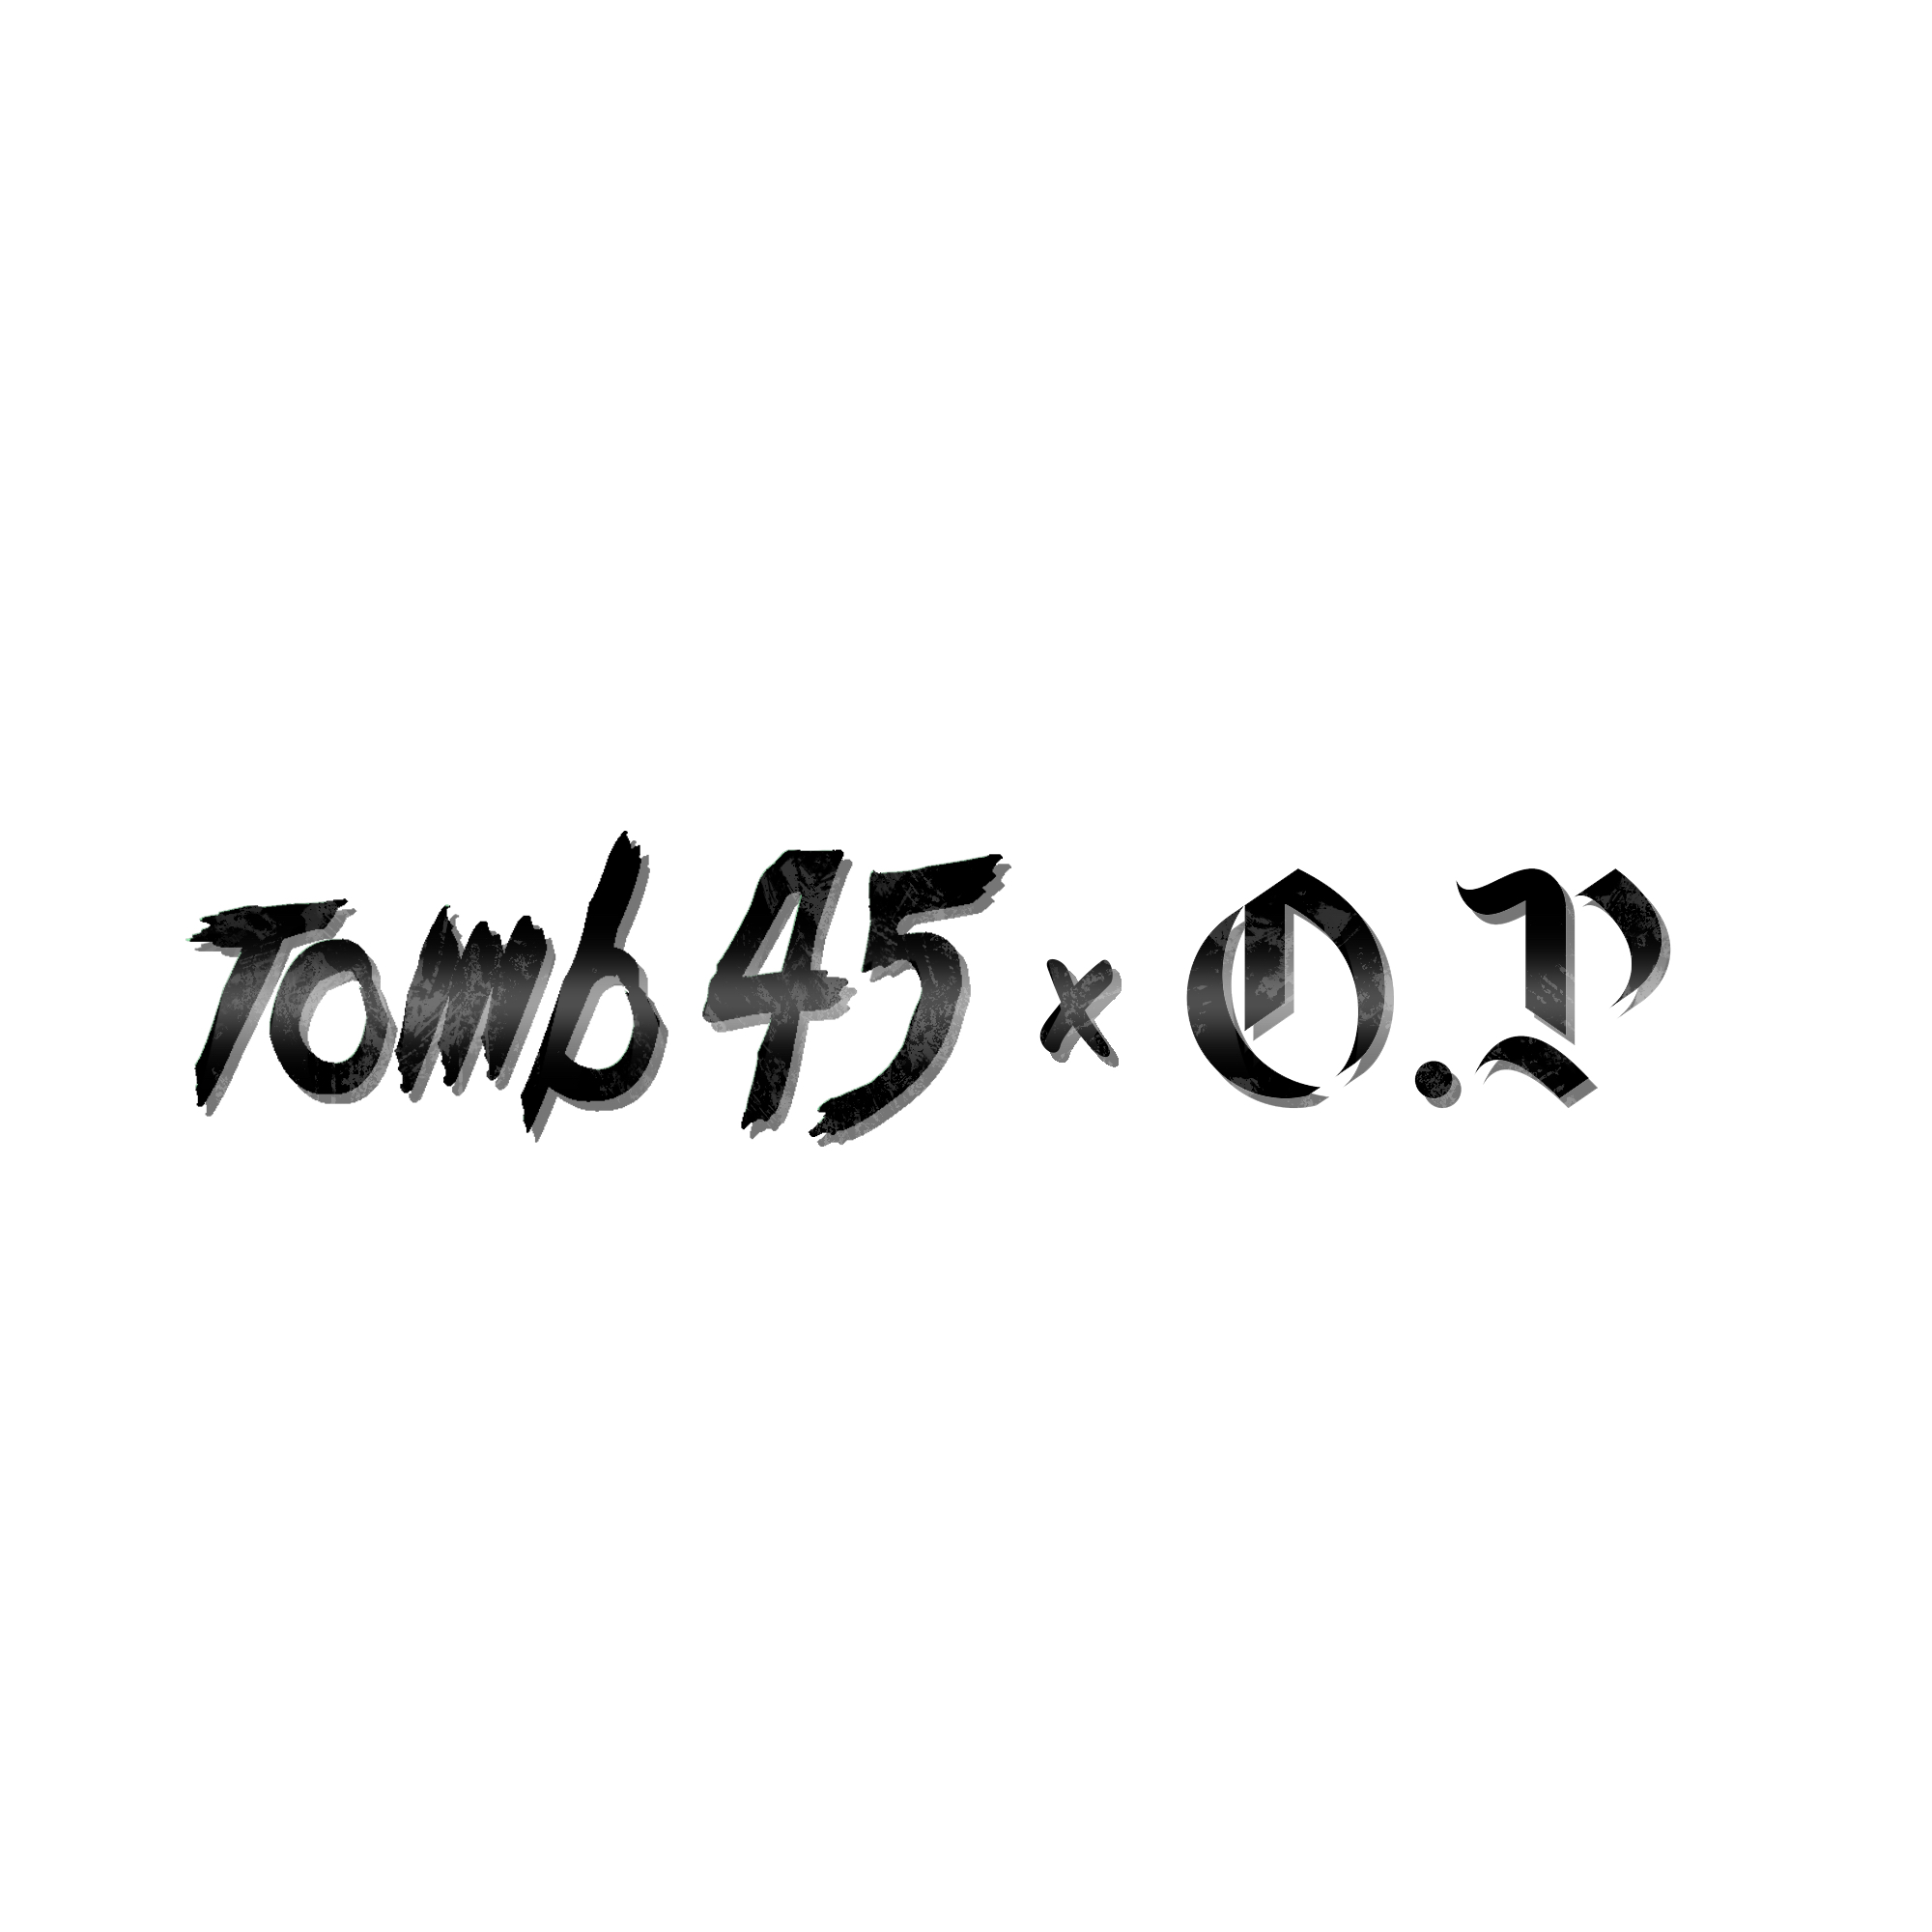 tomb 45